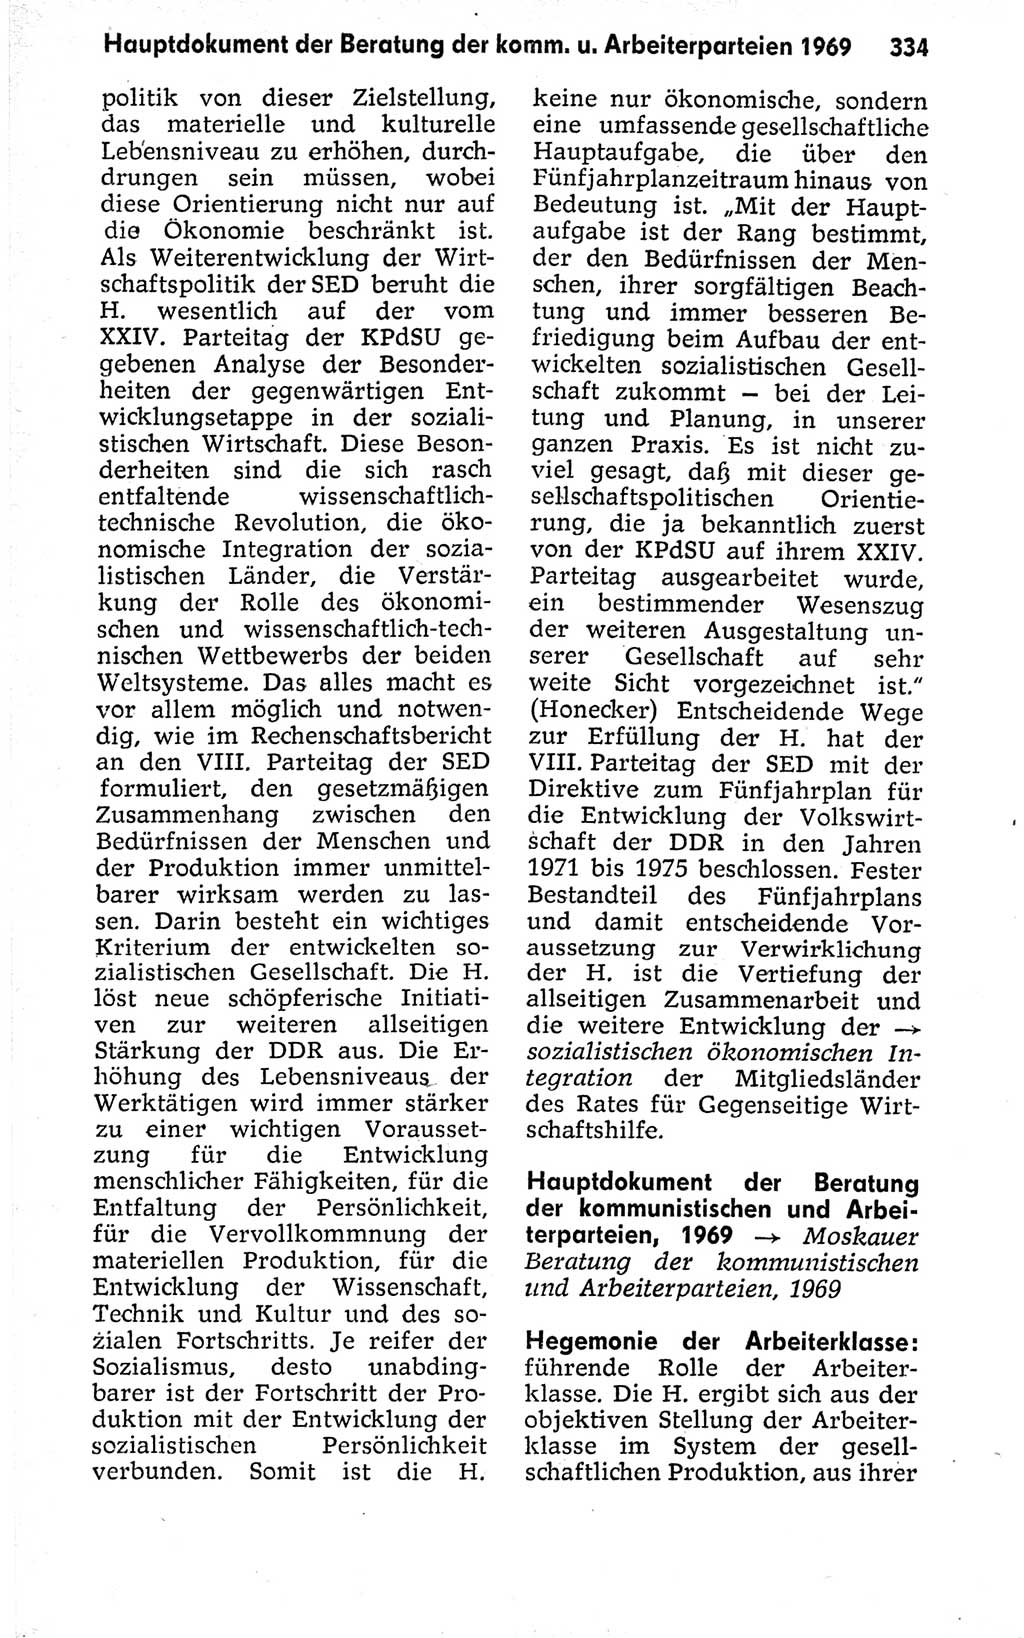 Kleines politisches Wörterbuch [Deutsche Demokratische Republik (DDR)] 1973, Seite 334 (Kl. pol. Wb. DDR 1973, S. 334)